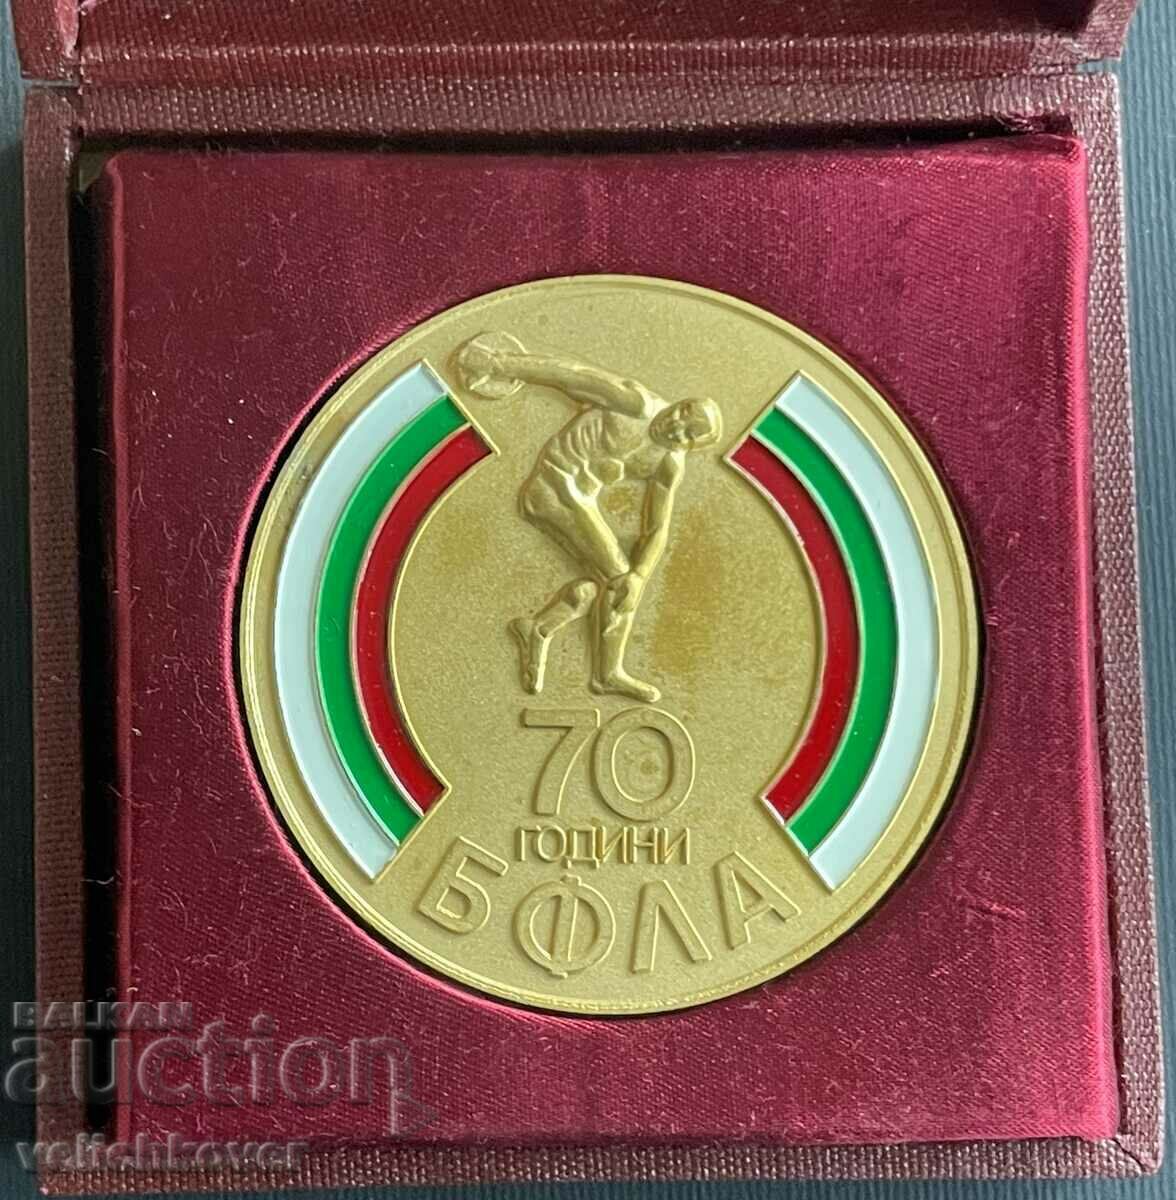 34403 Βουλγαρία μετάλλιο 70 ετών. Βουλγαρική Ομοσπονδία Στίβου